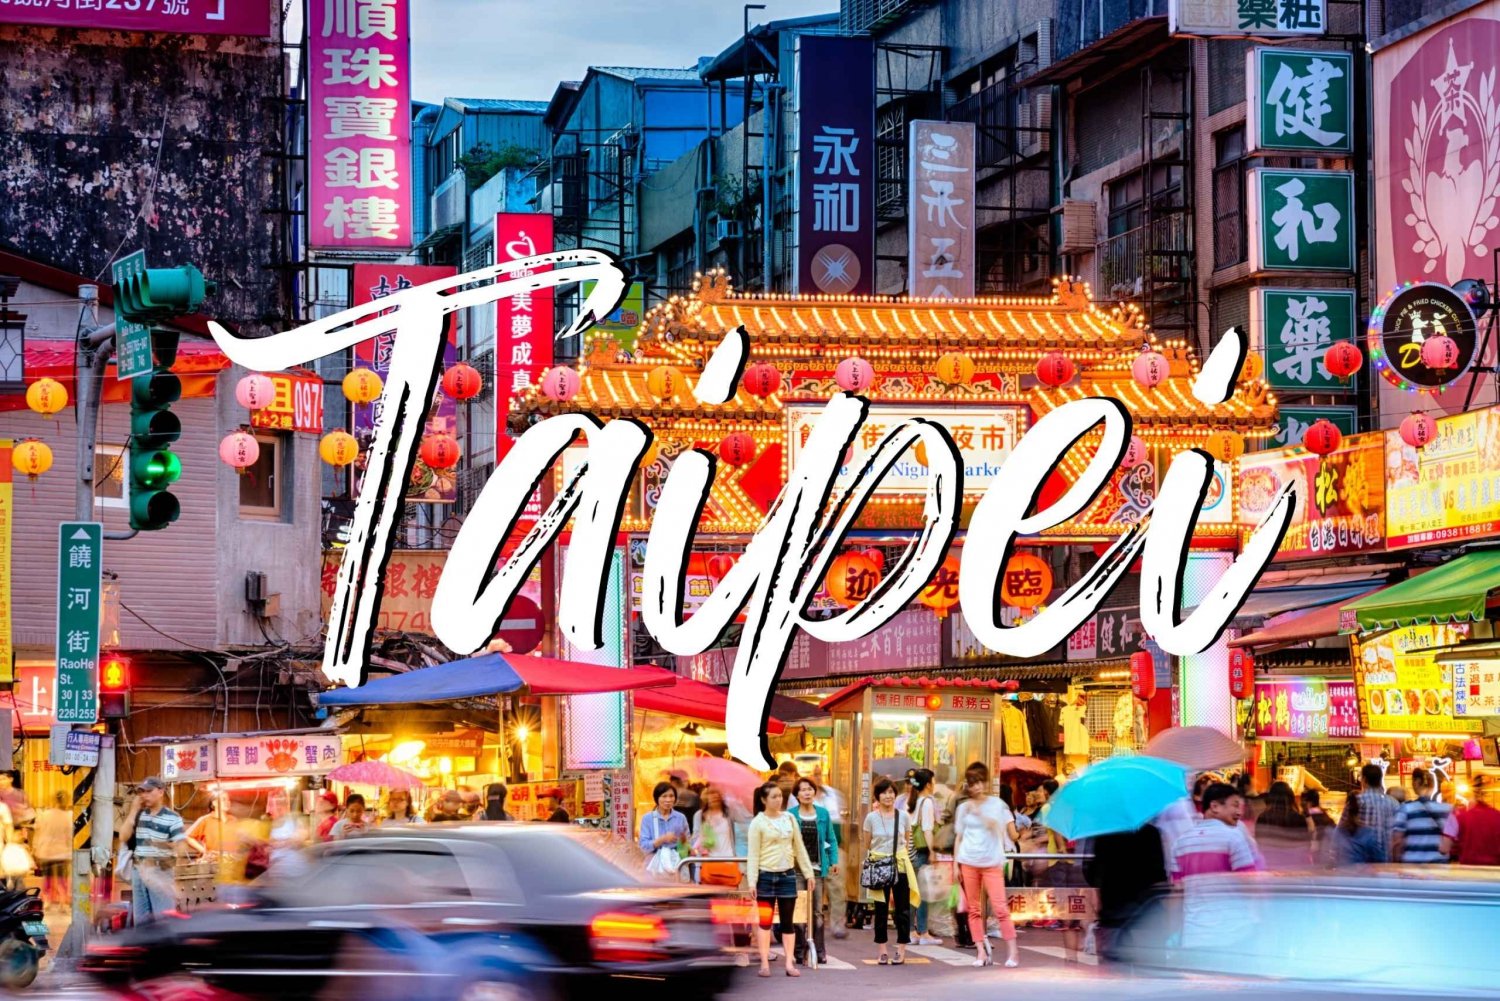 Paquete 1 de Taipei: Gratis y fácil con tour a pie sugerido